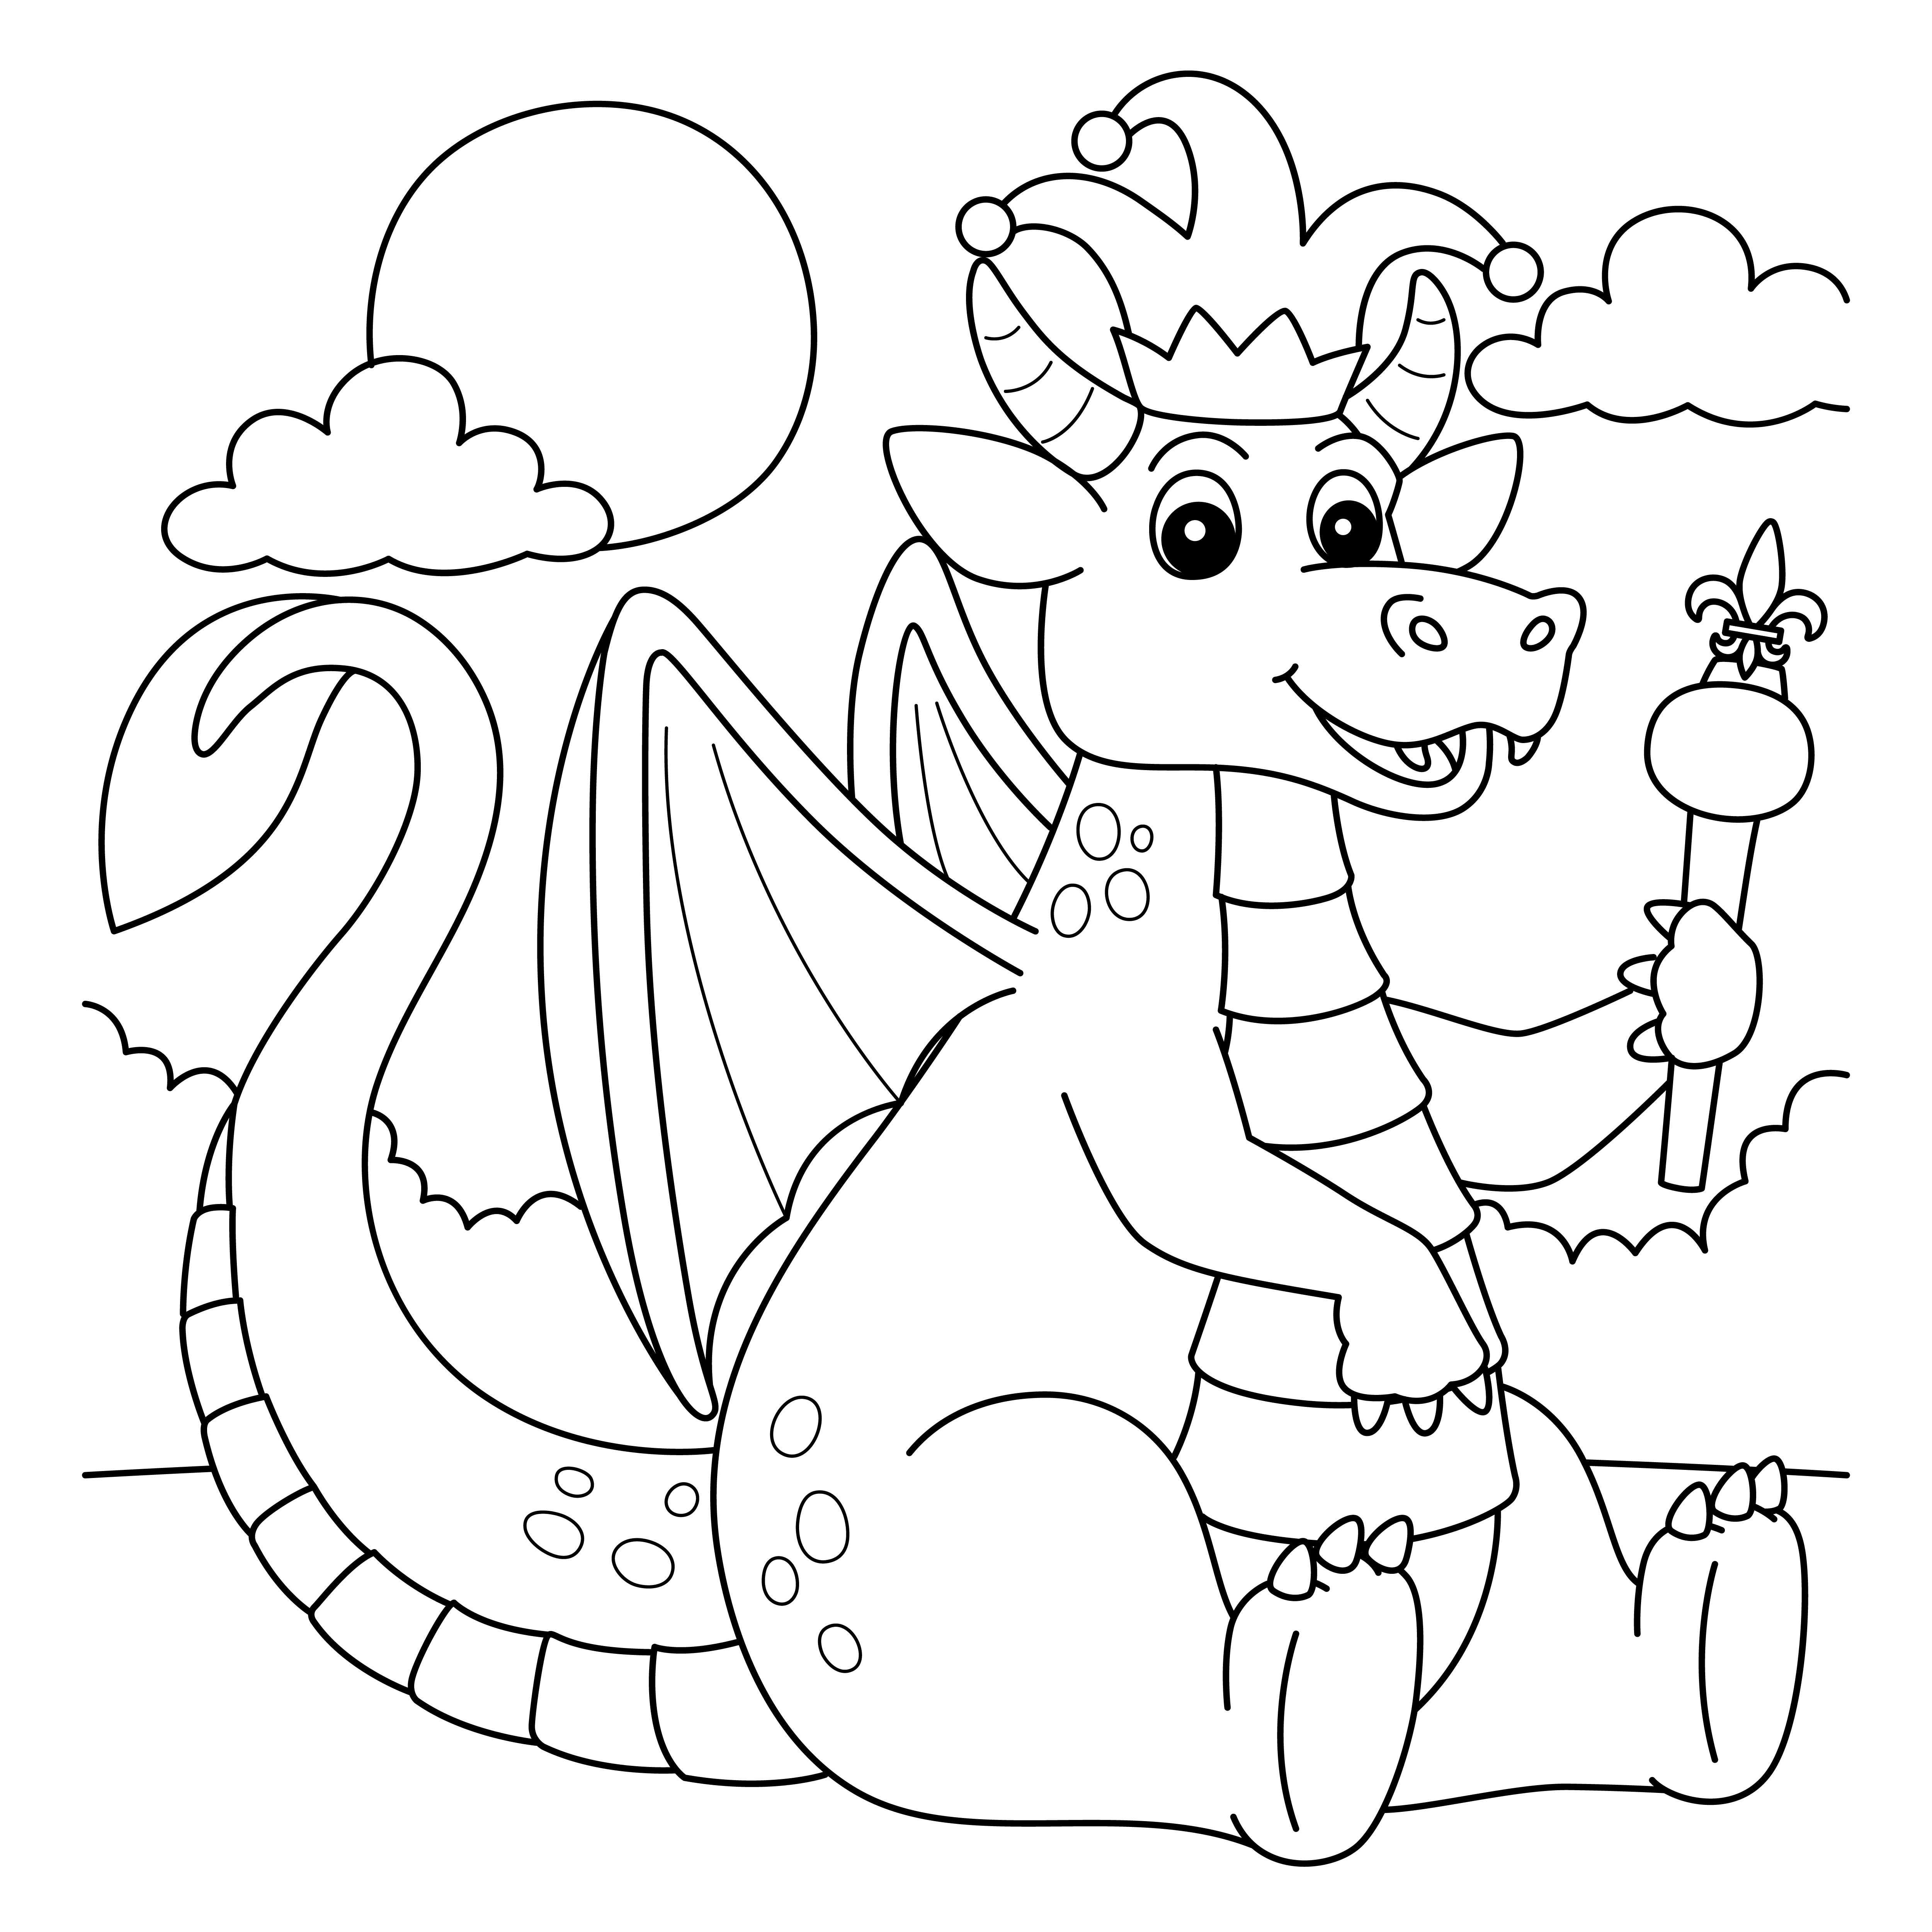 Раскраска мультяшный король дракон формата А4 в высоком качестве